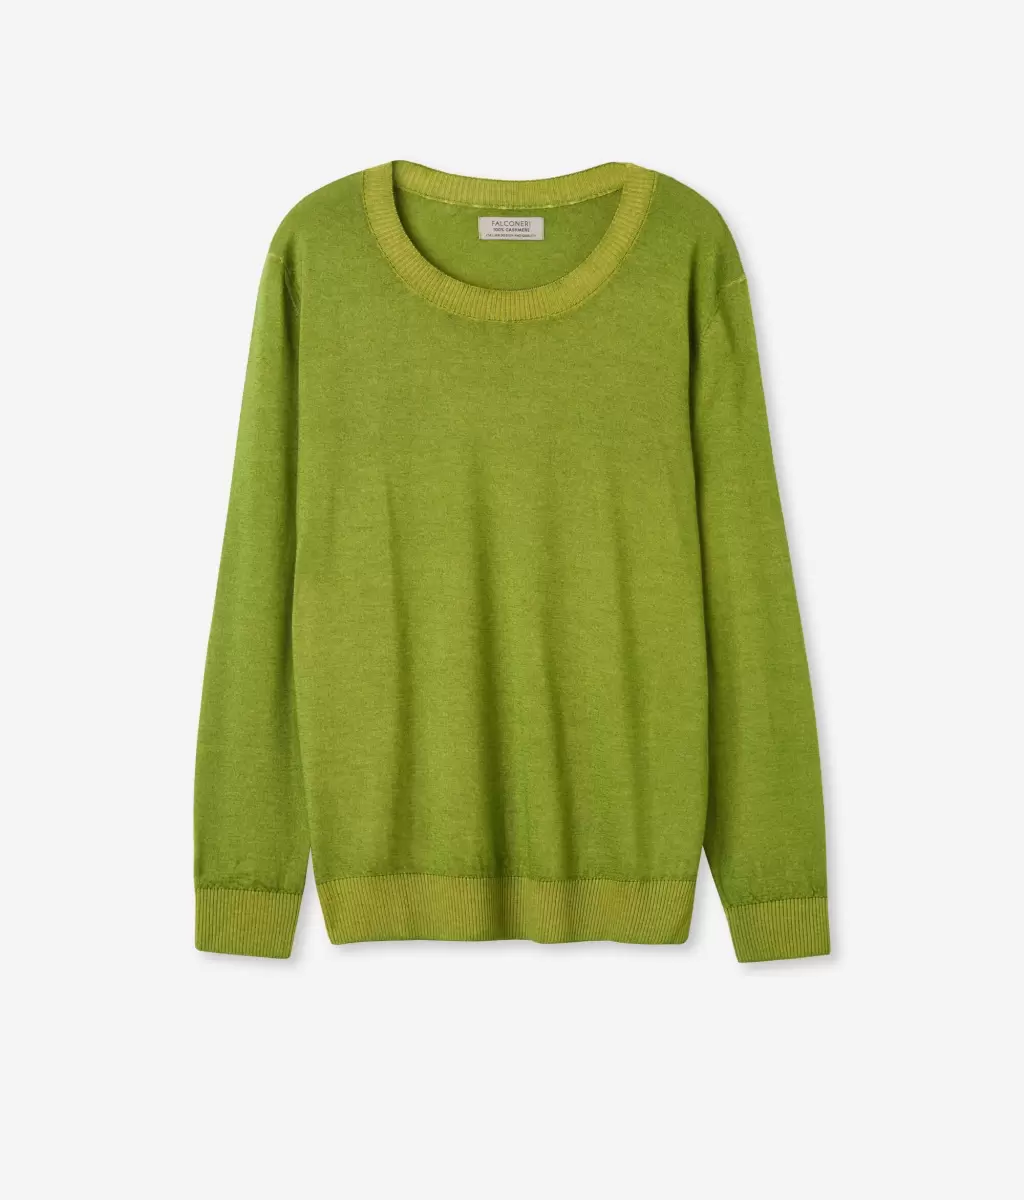 Swetry Z Okrągłym Dekoltem Kobieta Pulower Z Kaszmiru Ultrafine Green Falconeri - 4